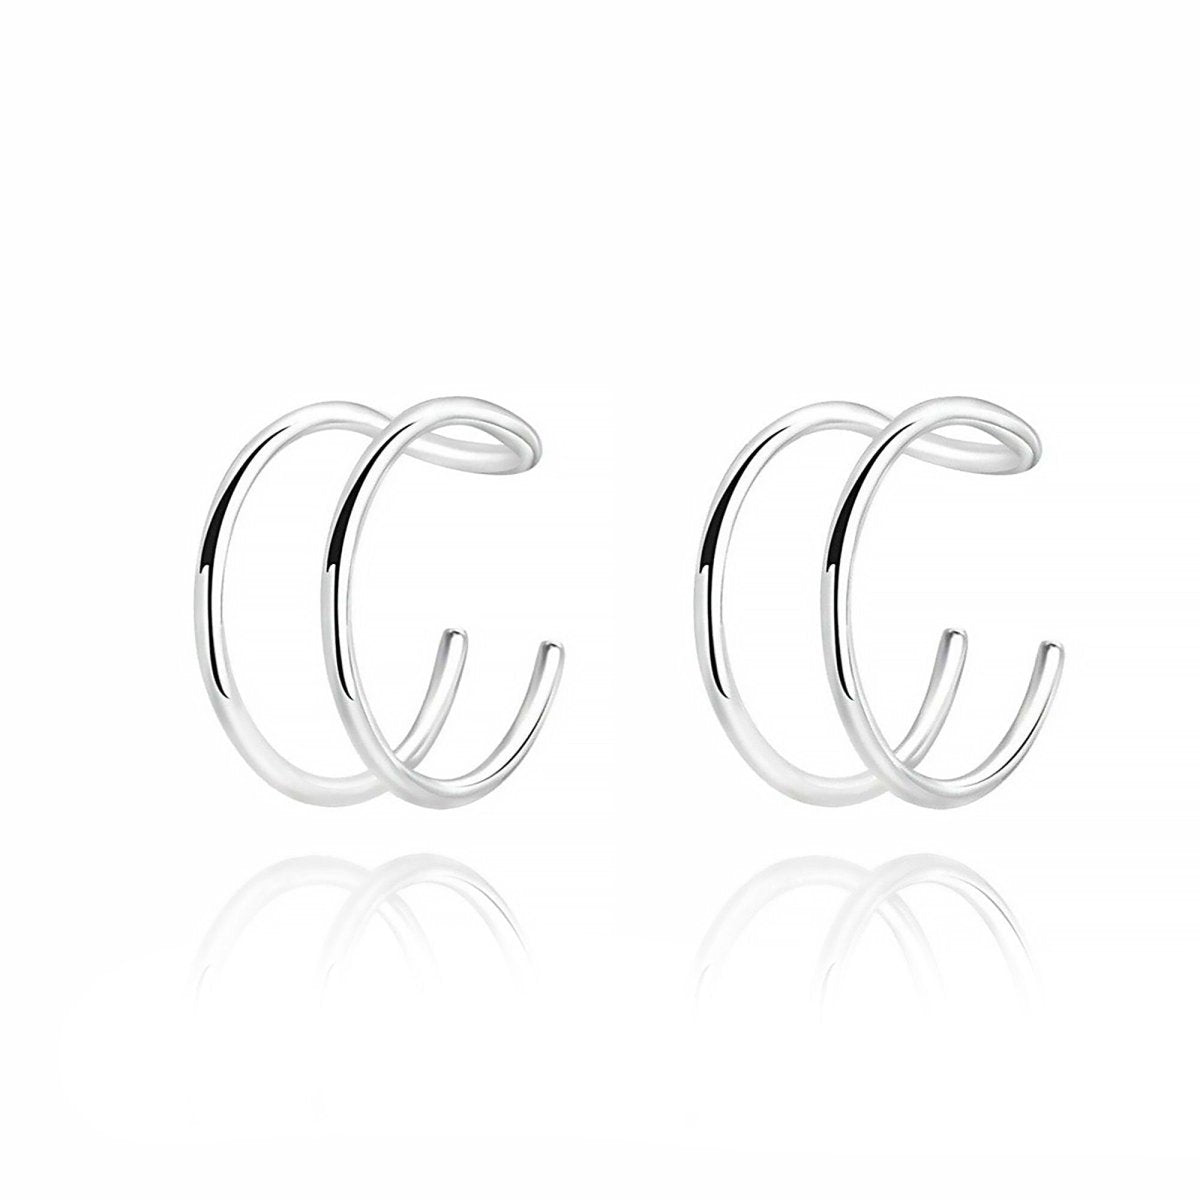 "Ear Cuff - U" Earrings - Milas Jewels Shop